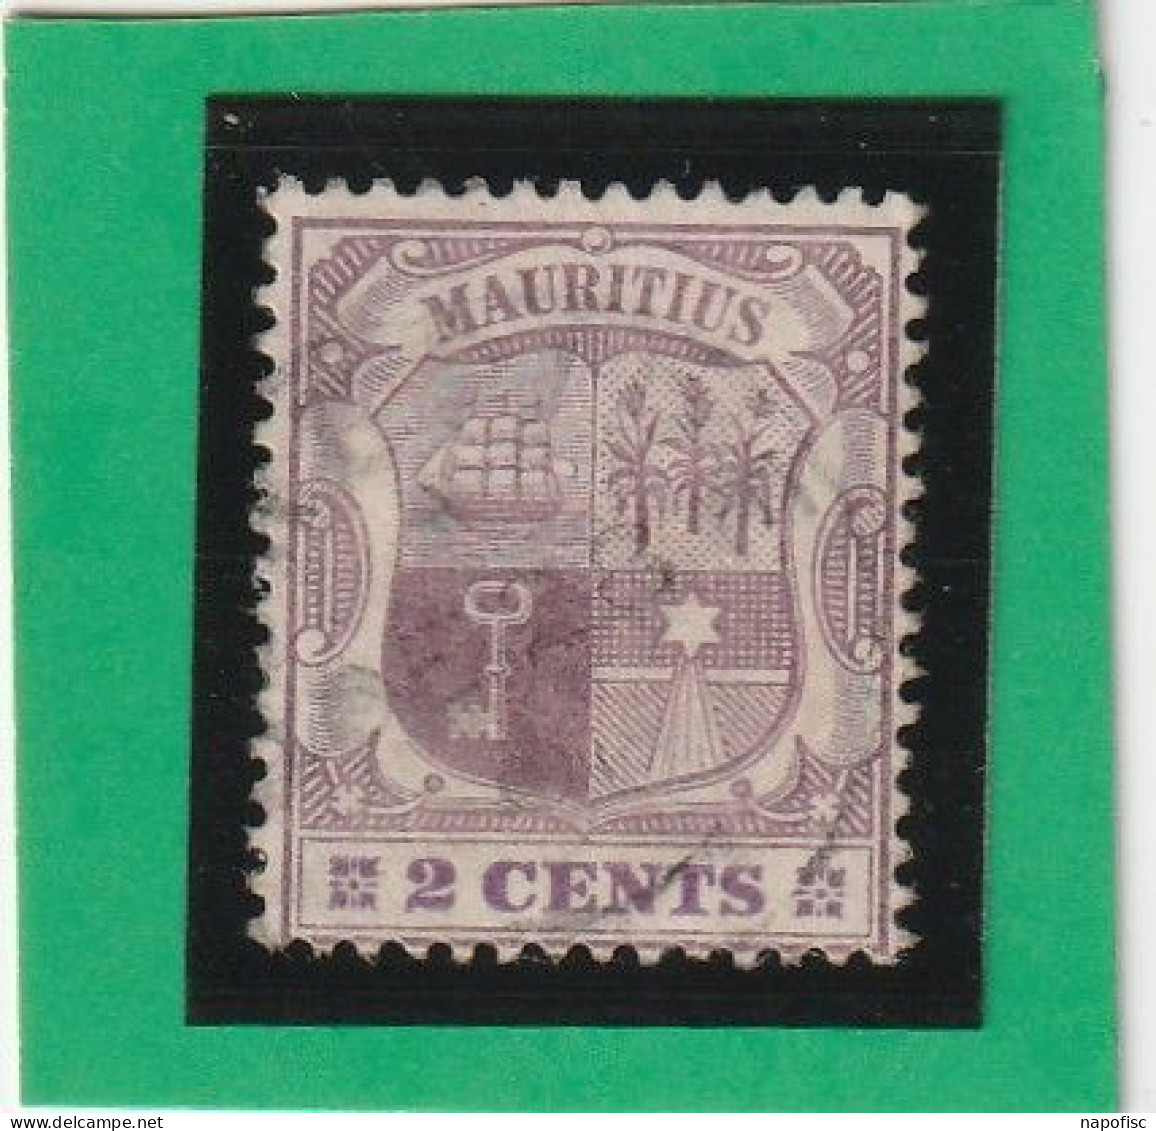 Mauritius-Ile Maurice N°100 - Mauritius (...-1967)